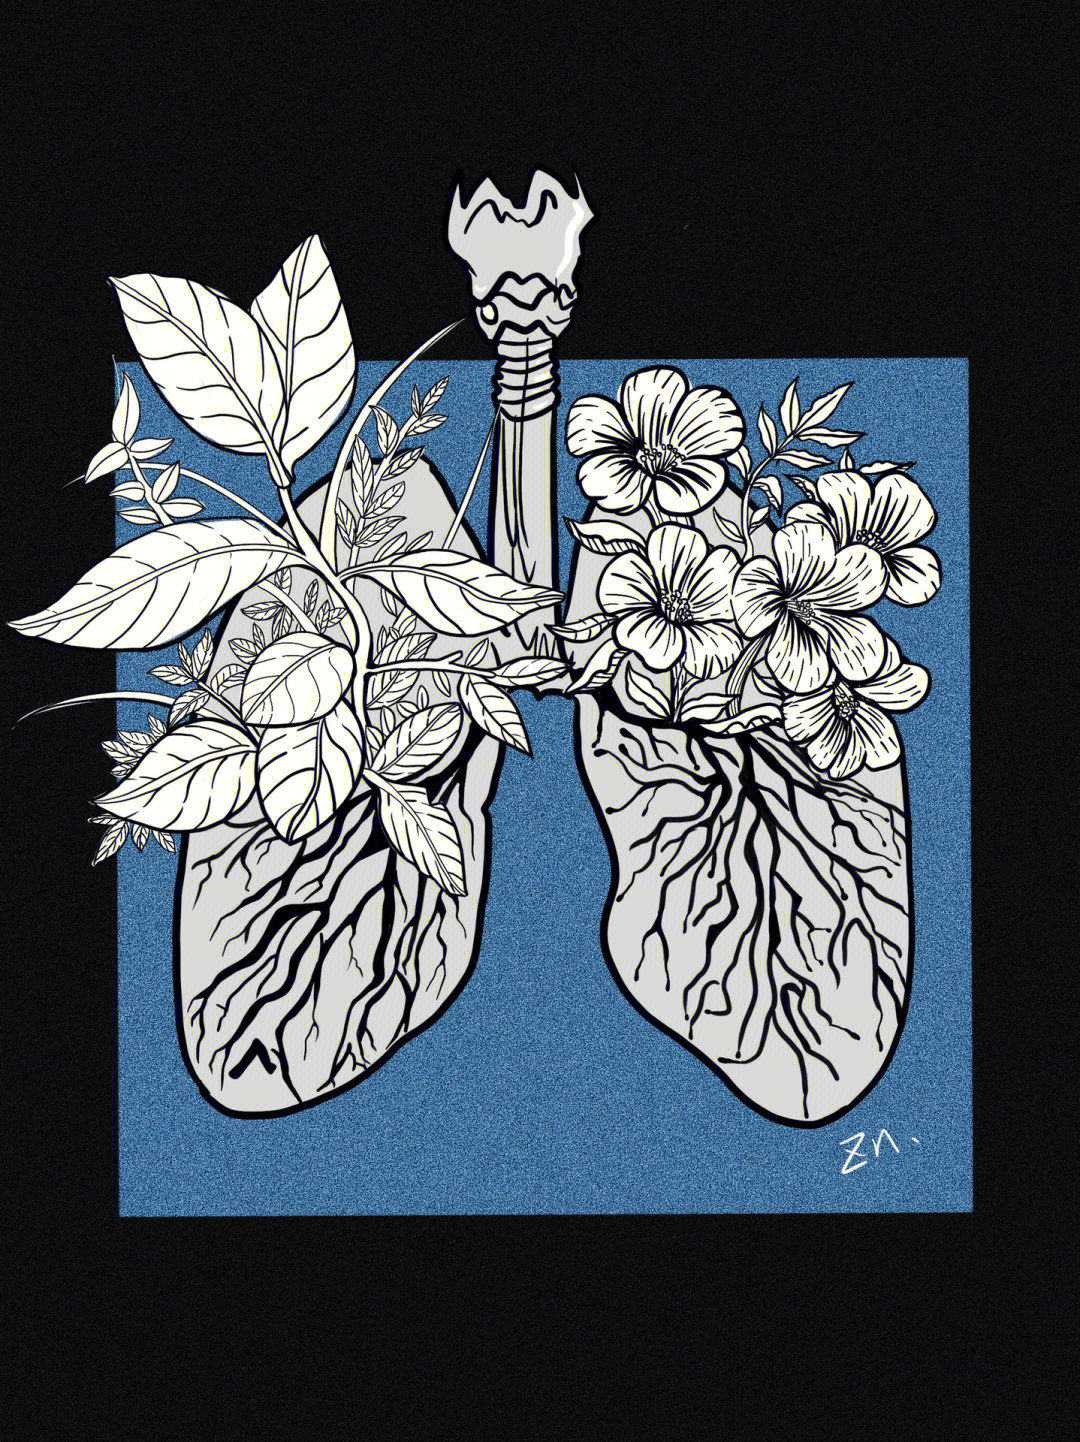 肺部绘画作品图片